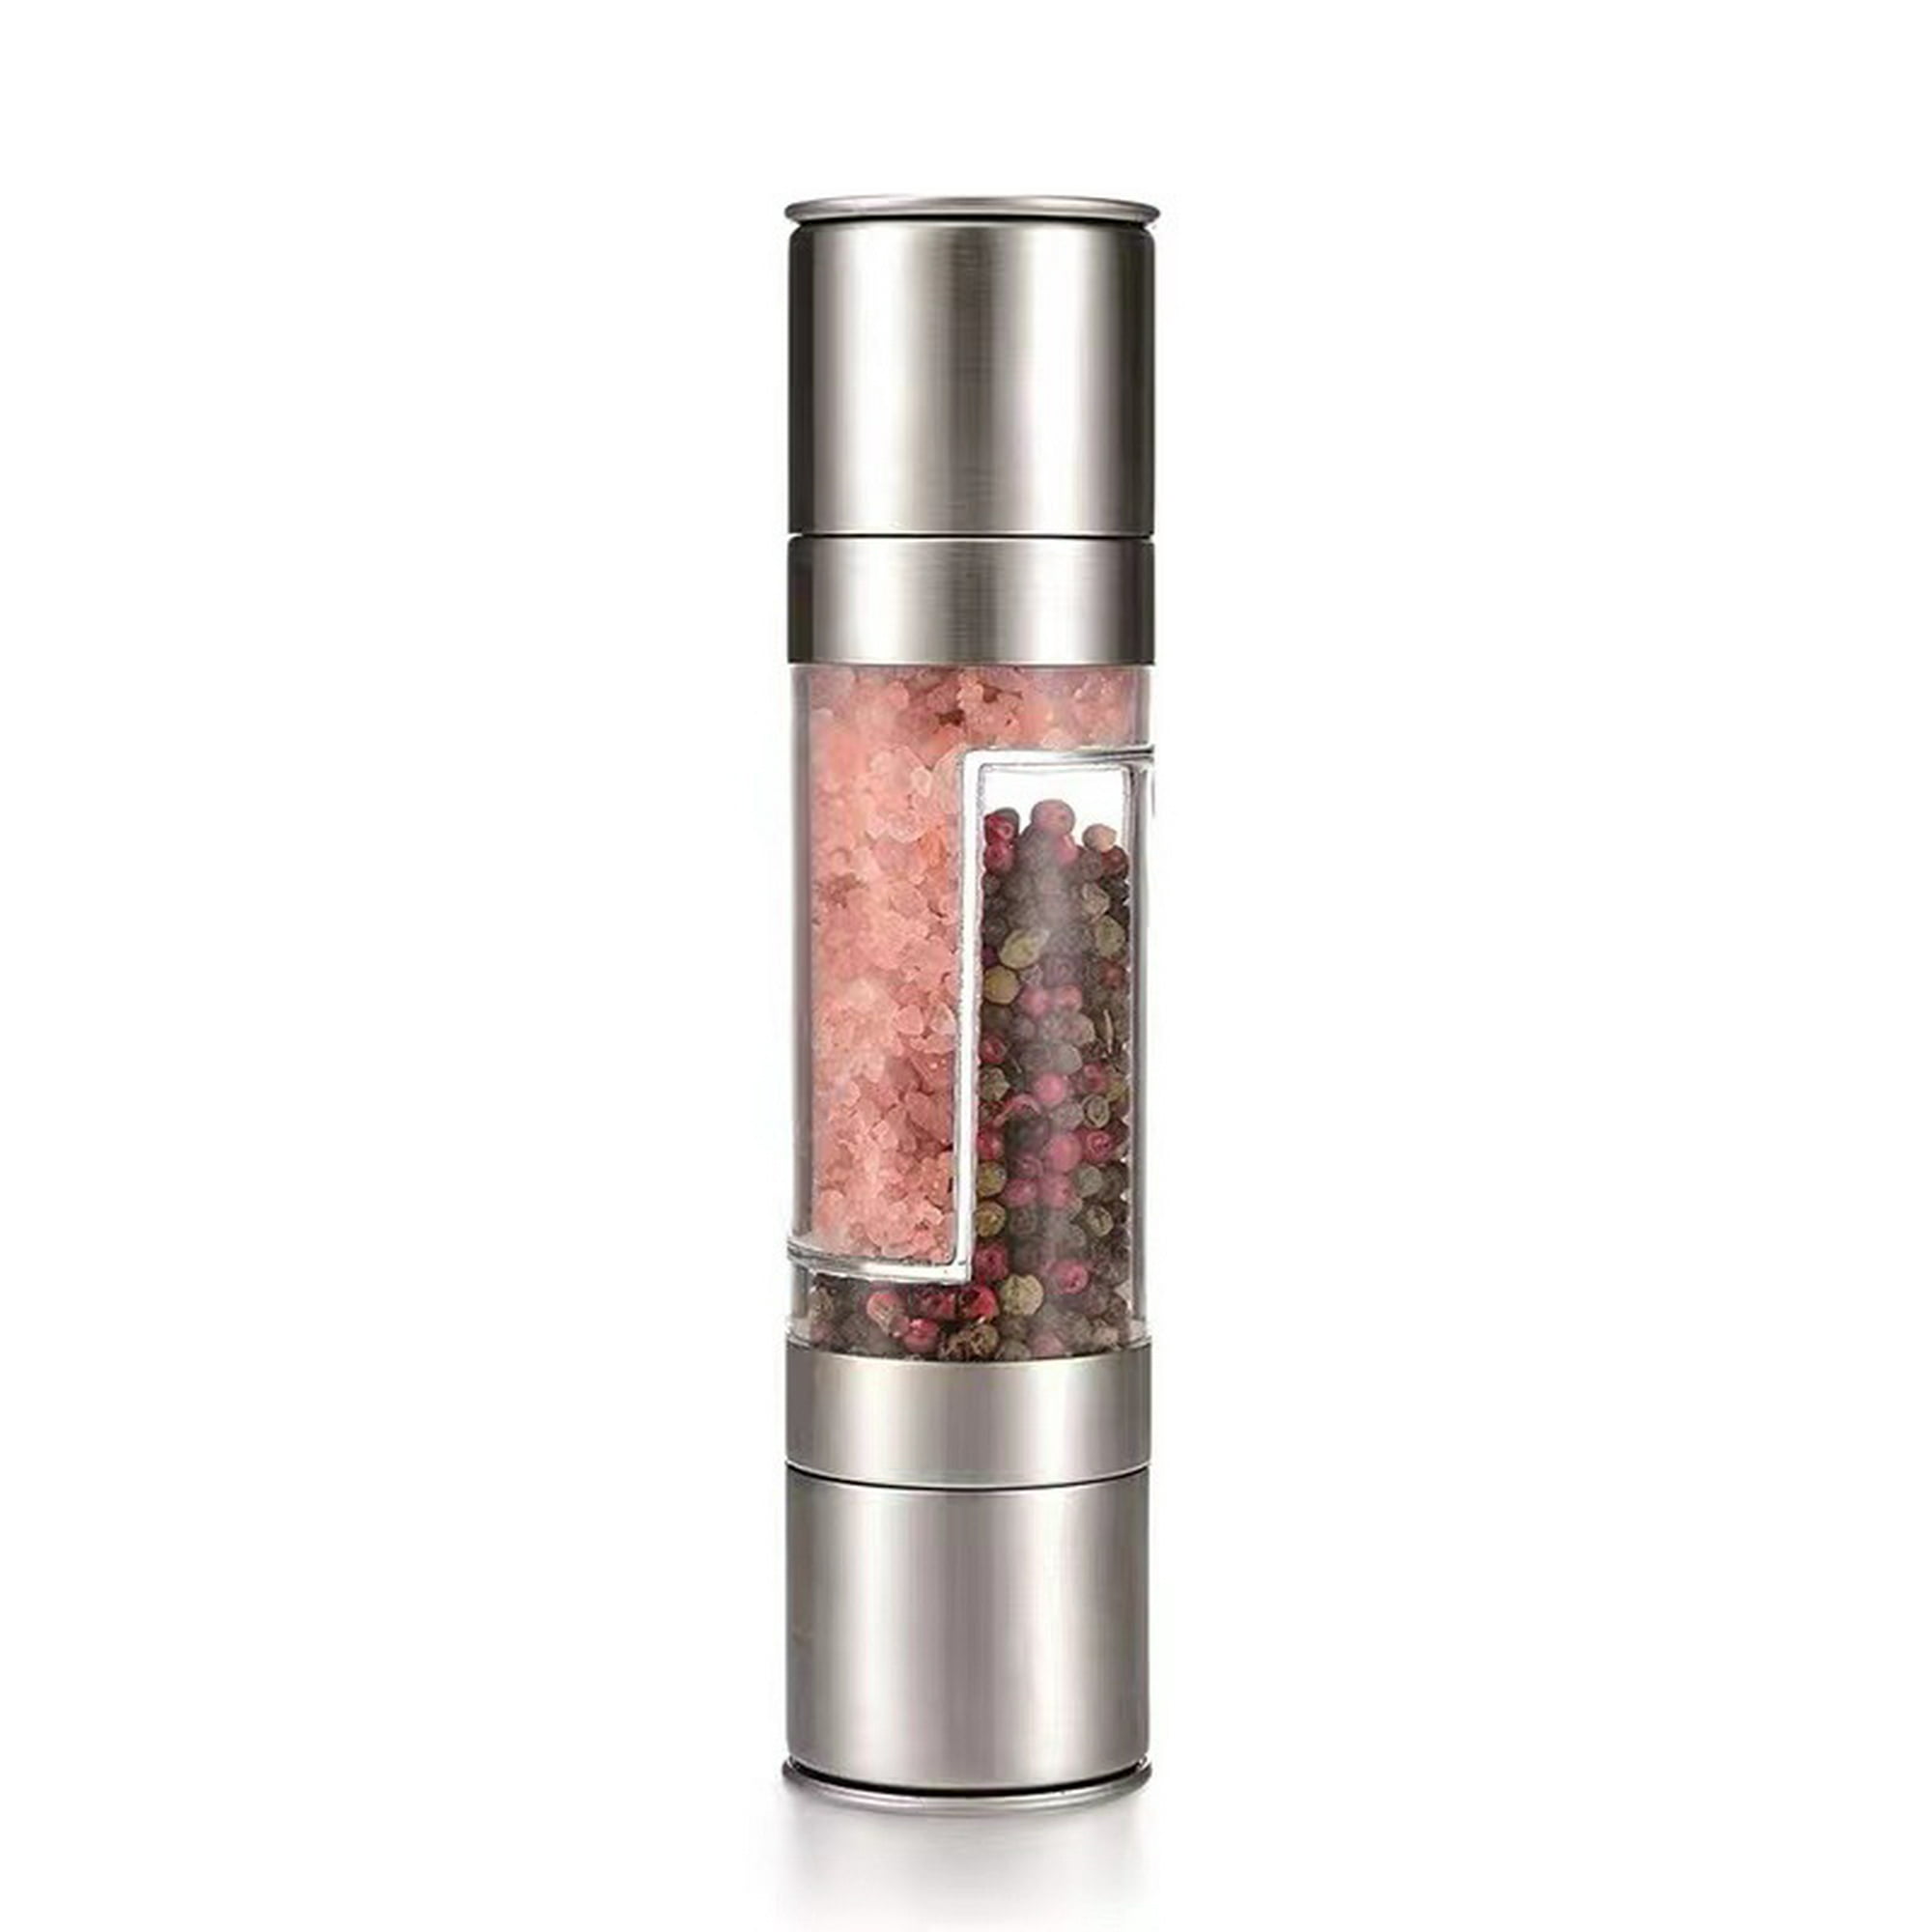 molinillo de sal y pimienta eléctrico - Display 12 pcs - Beper